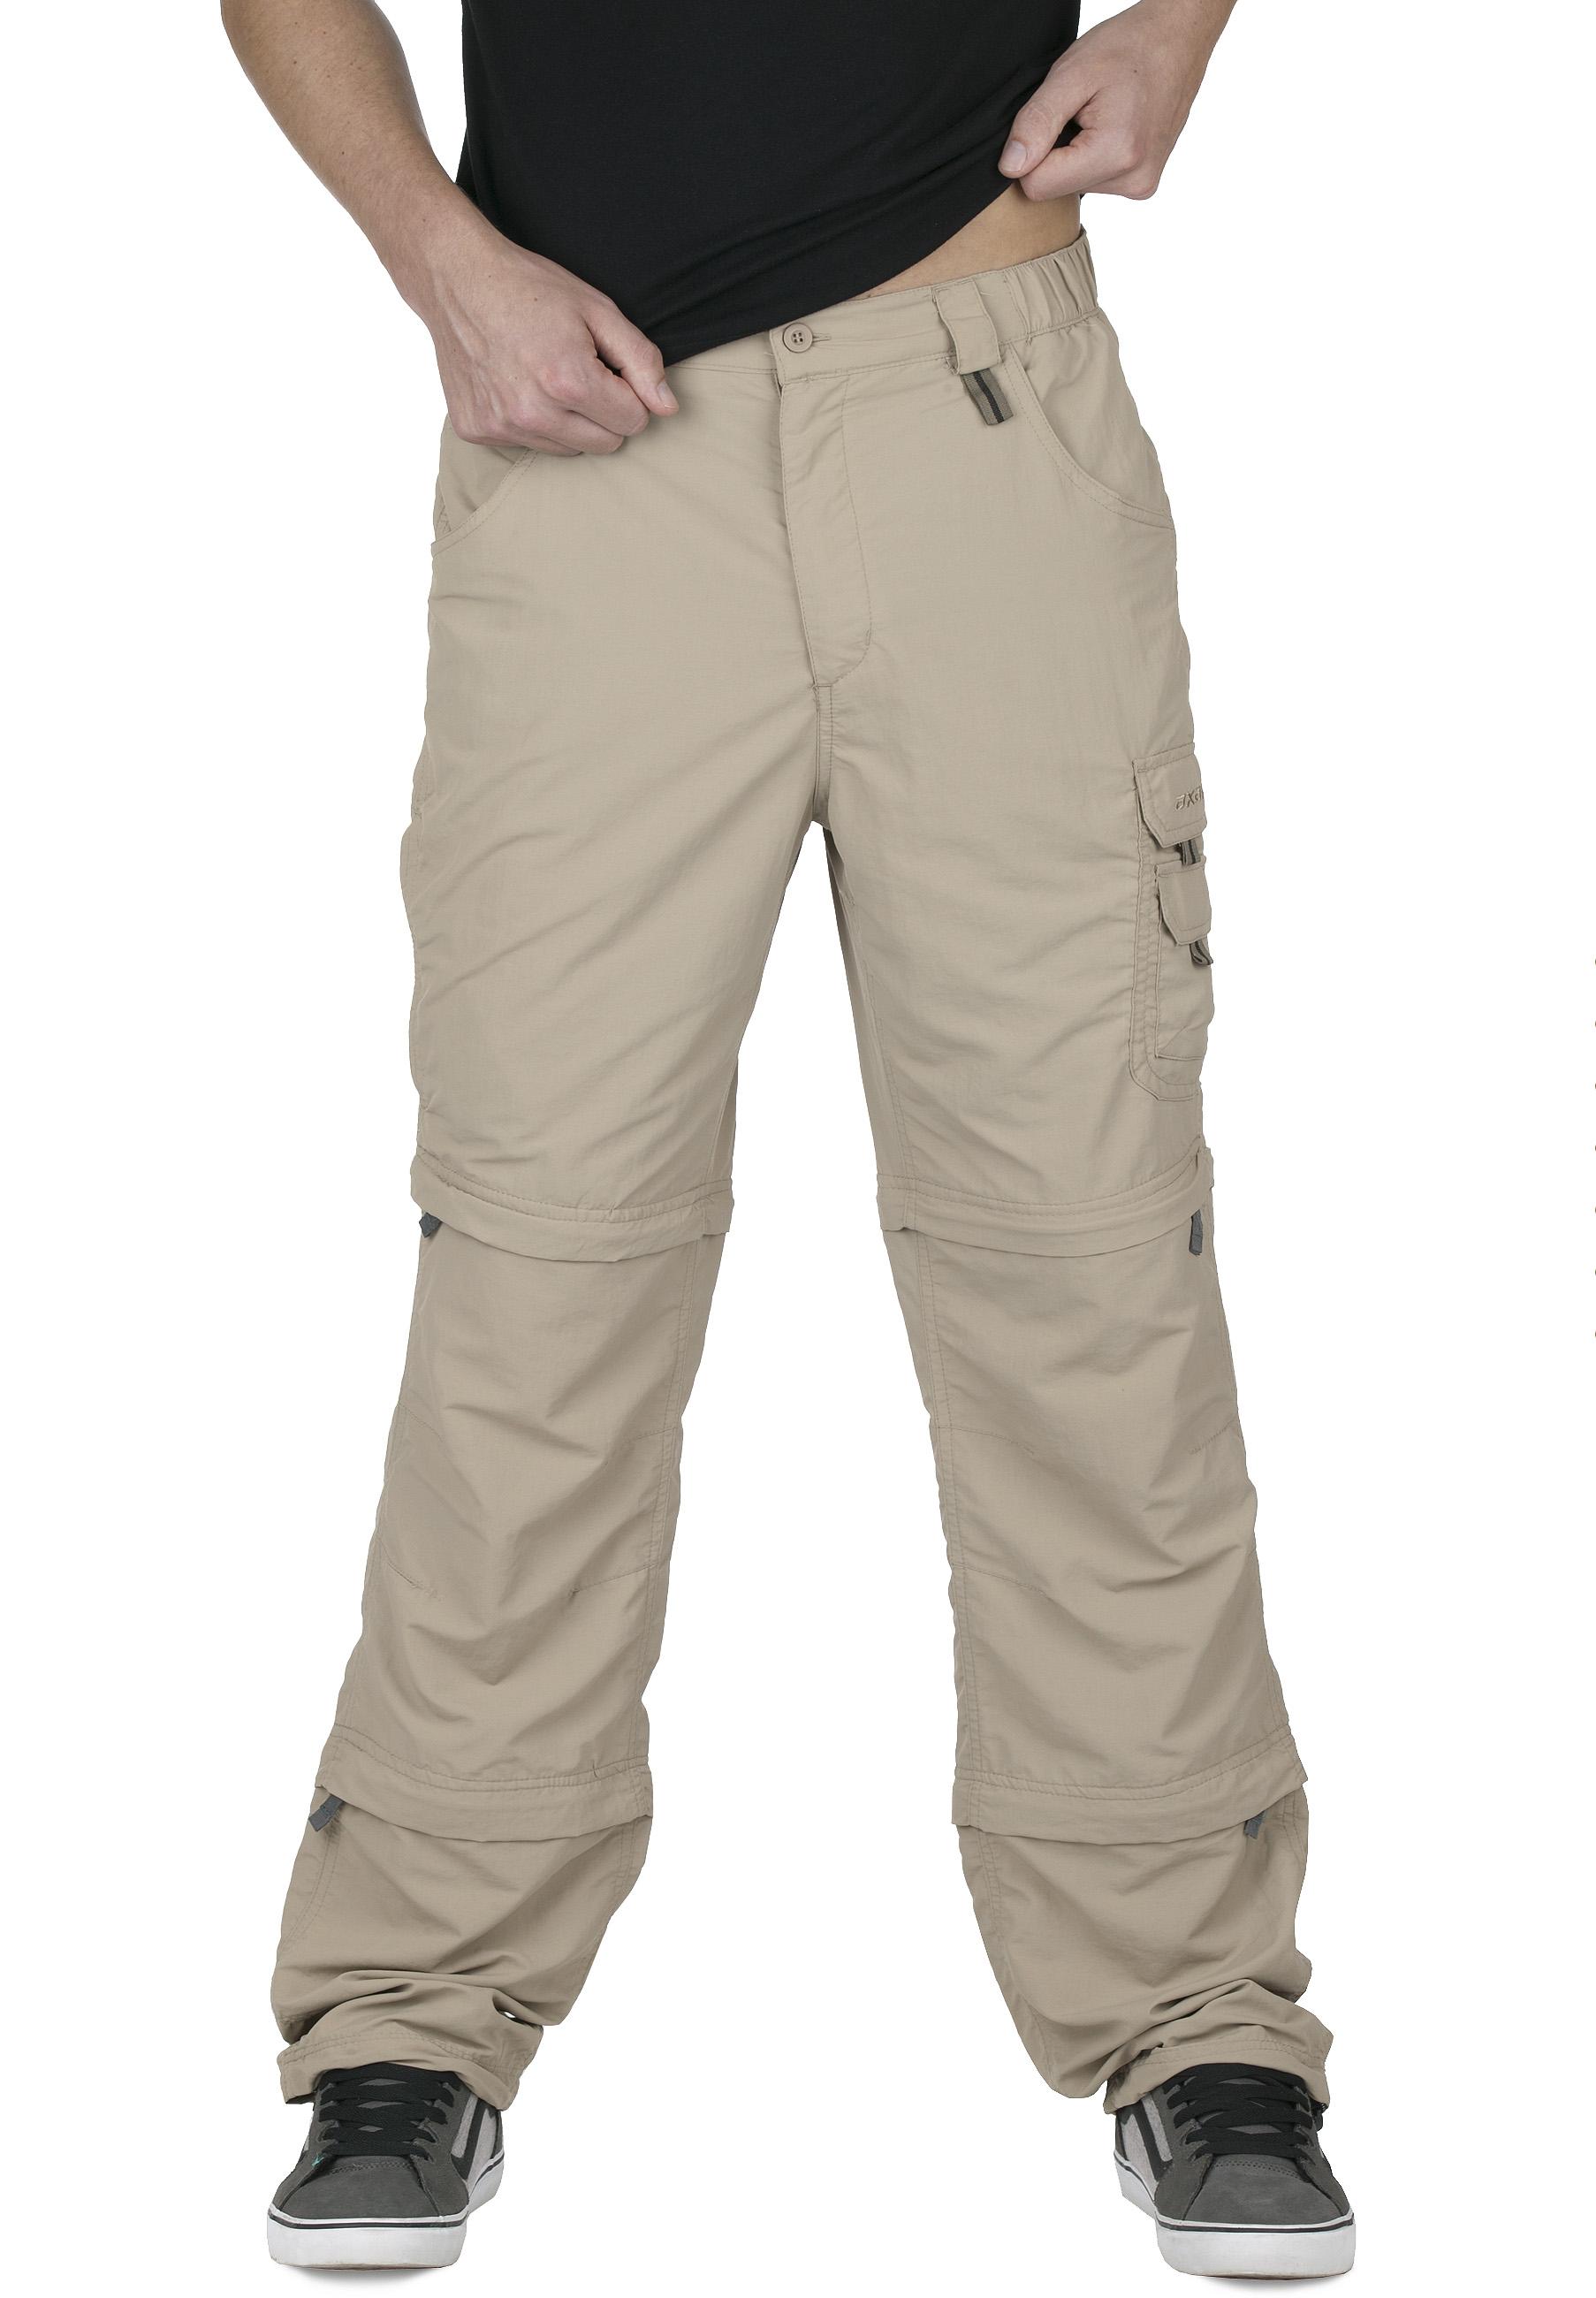 Foto Pantalones desmontables axant Pro Double beige para hombre , xl foto 964958